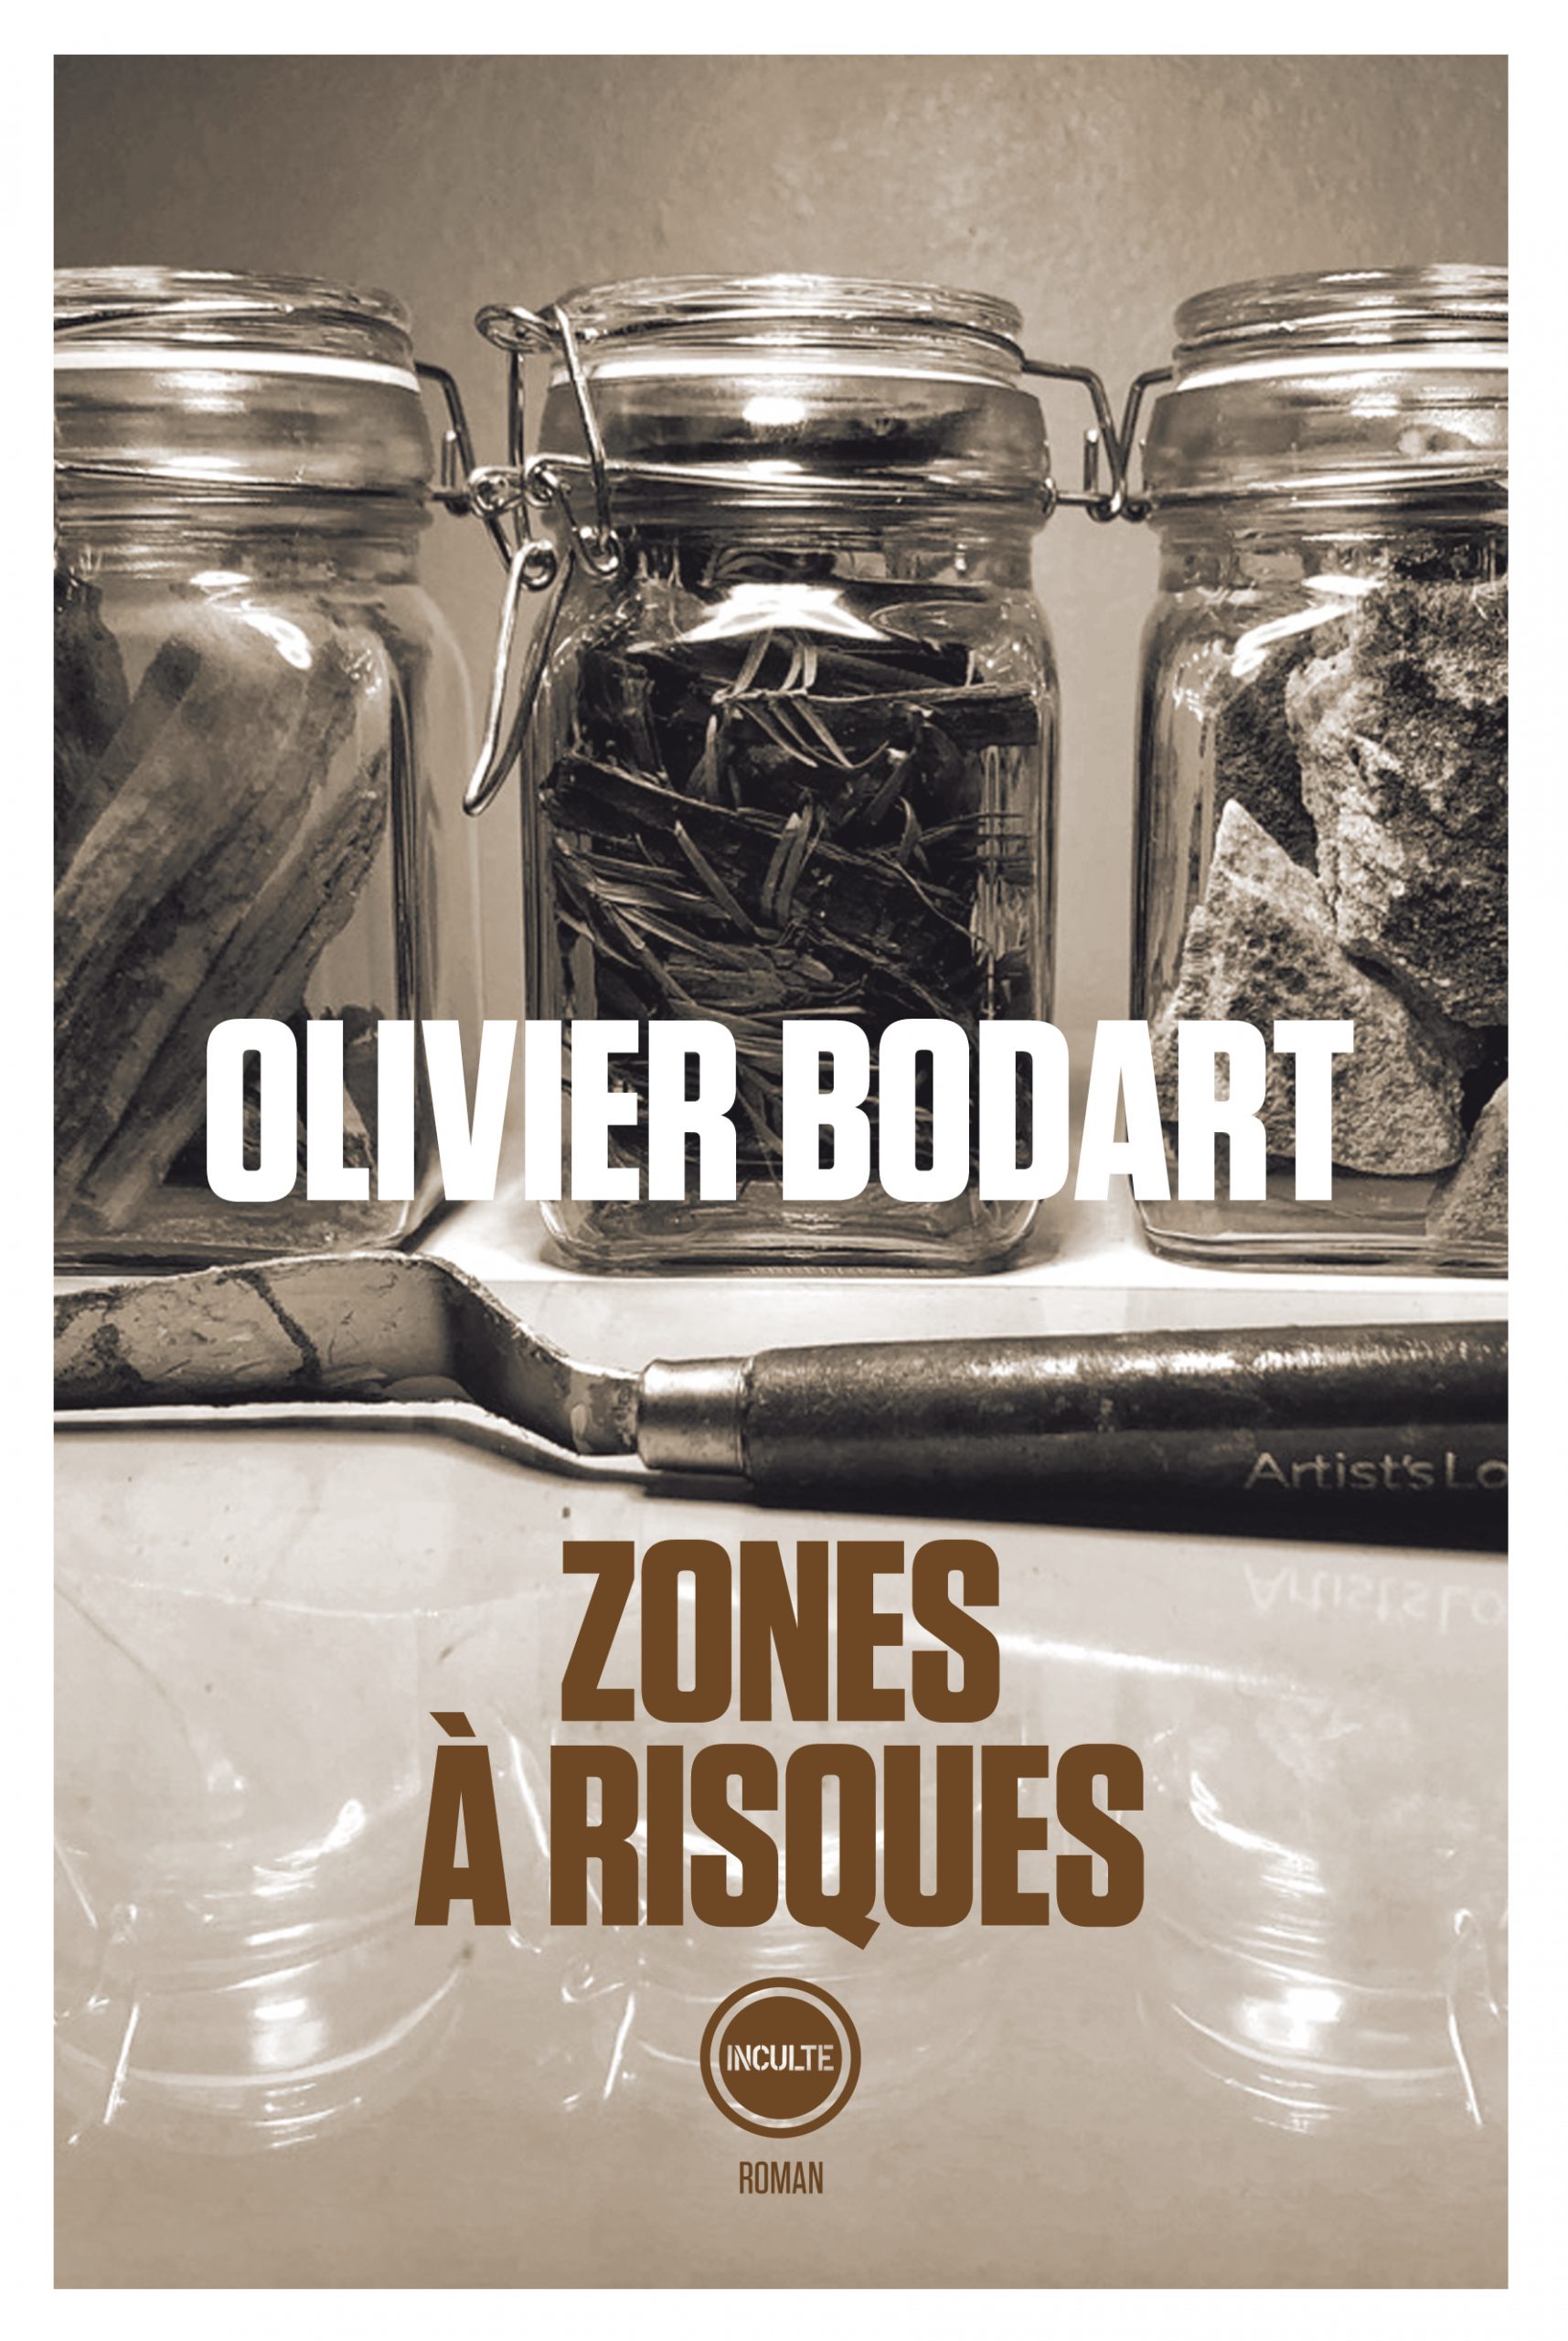 Zones à risques, d’Olivier Bodart